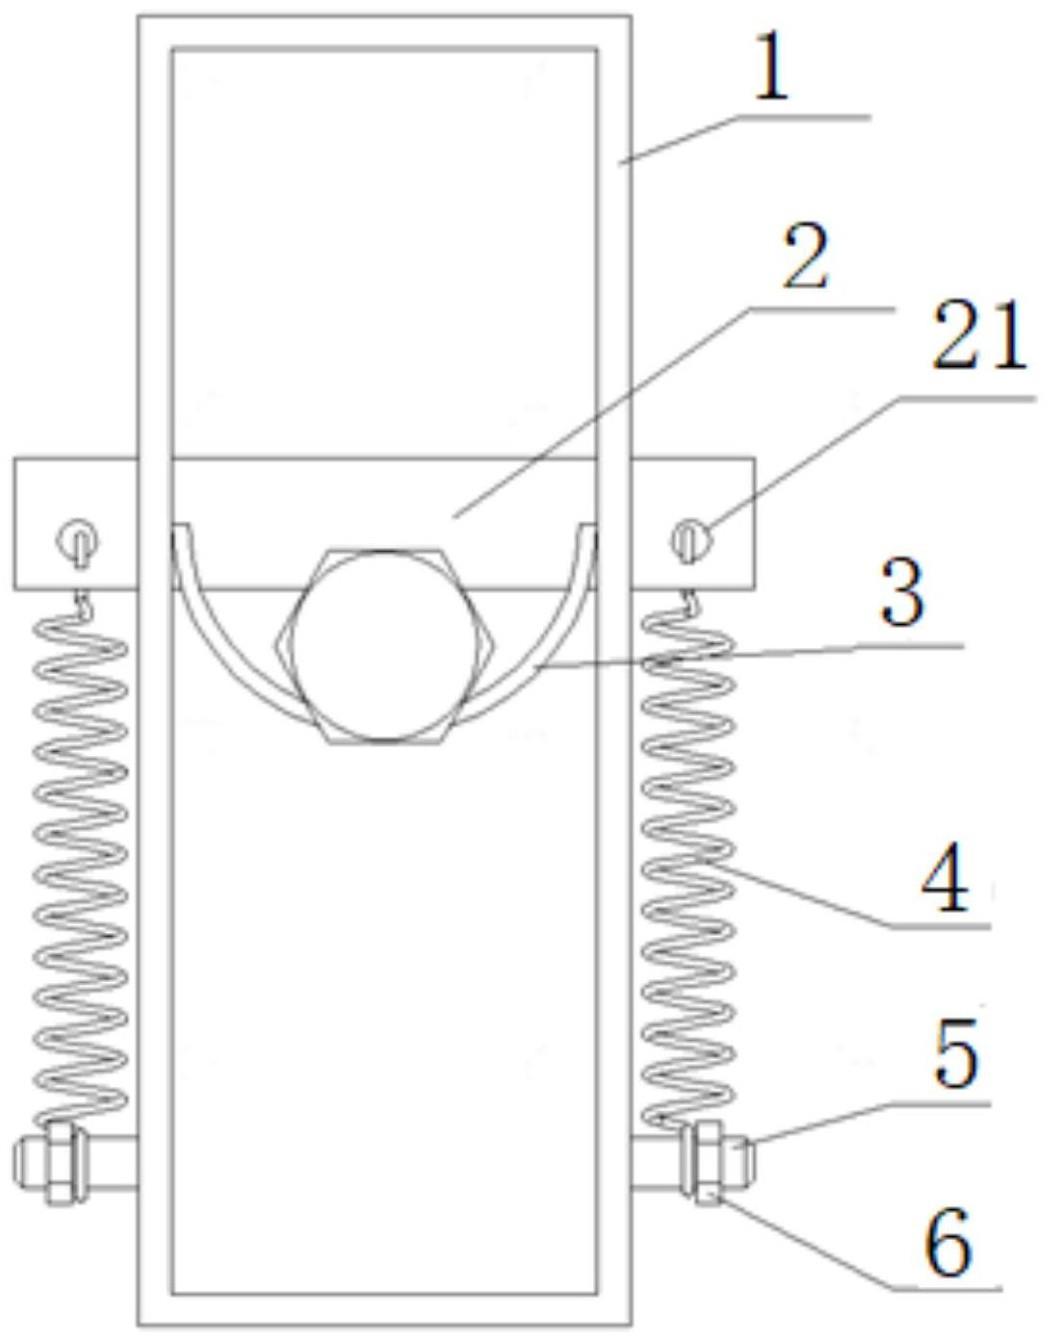 螺栓螺纹清理工具的制作方法